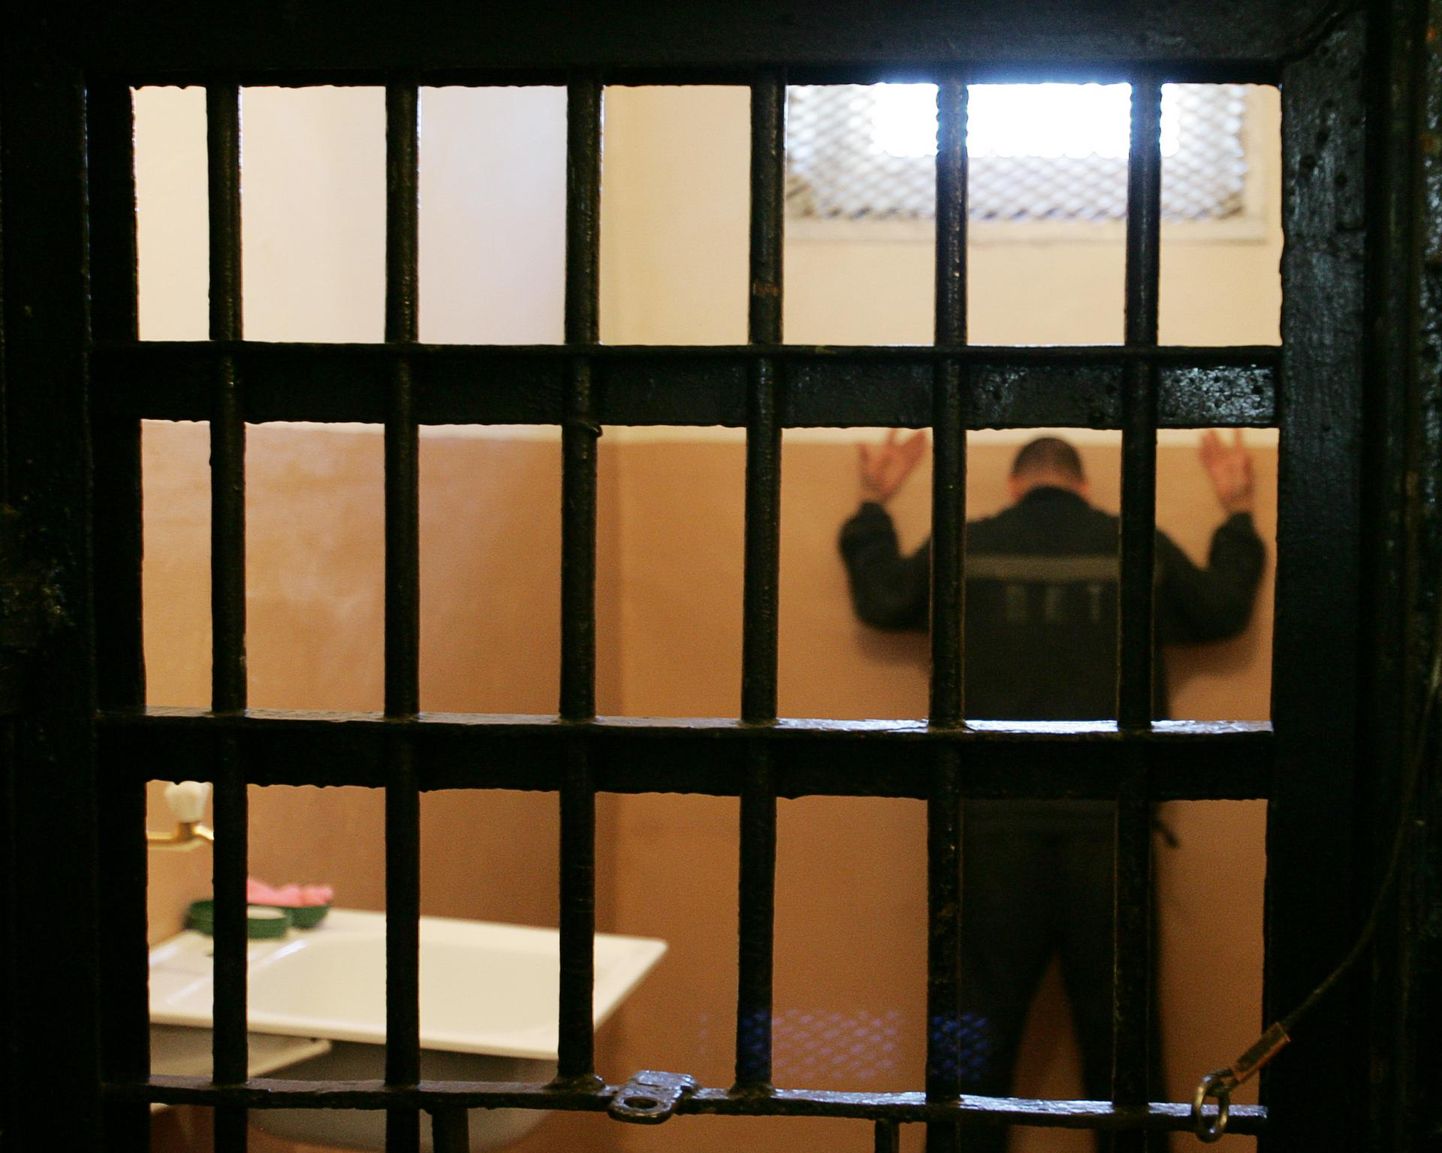 Kinnipeetav Mordoovia karistuskoloonias Volga föderaalringkonnas. Euroopa Inimõiguste Kohtu andmetel leiab pool kõigist piinamistest ja inimsusevastastest kuritegudest aset Venemaal, kus neid aga piisavalt ei uurita.